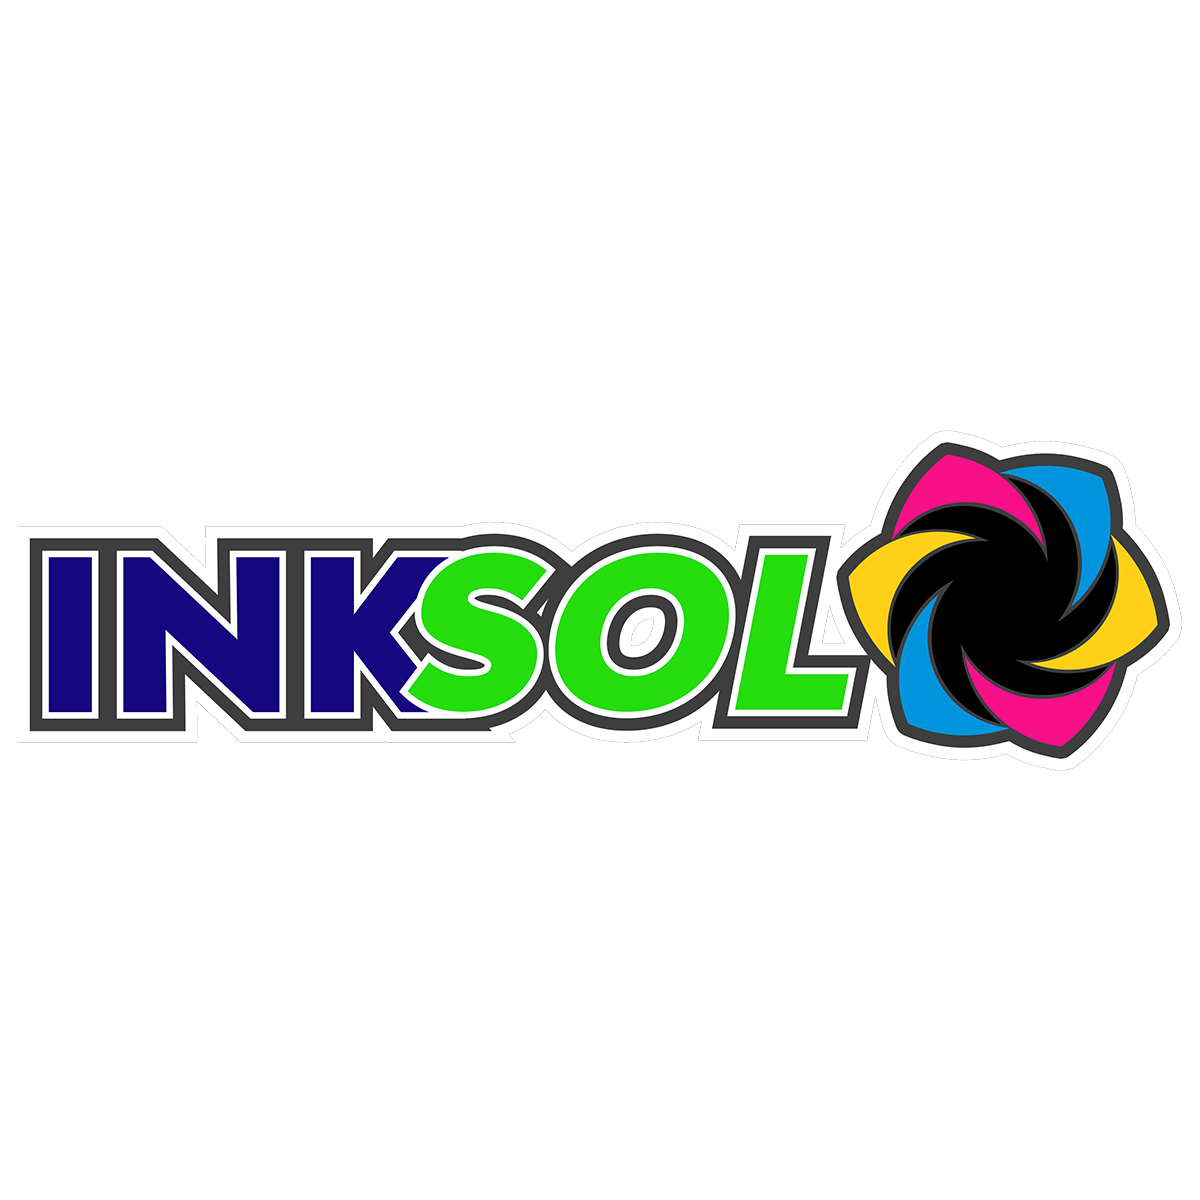 INK SOL® Printer Combos